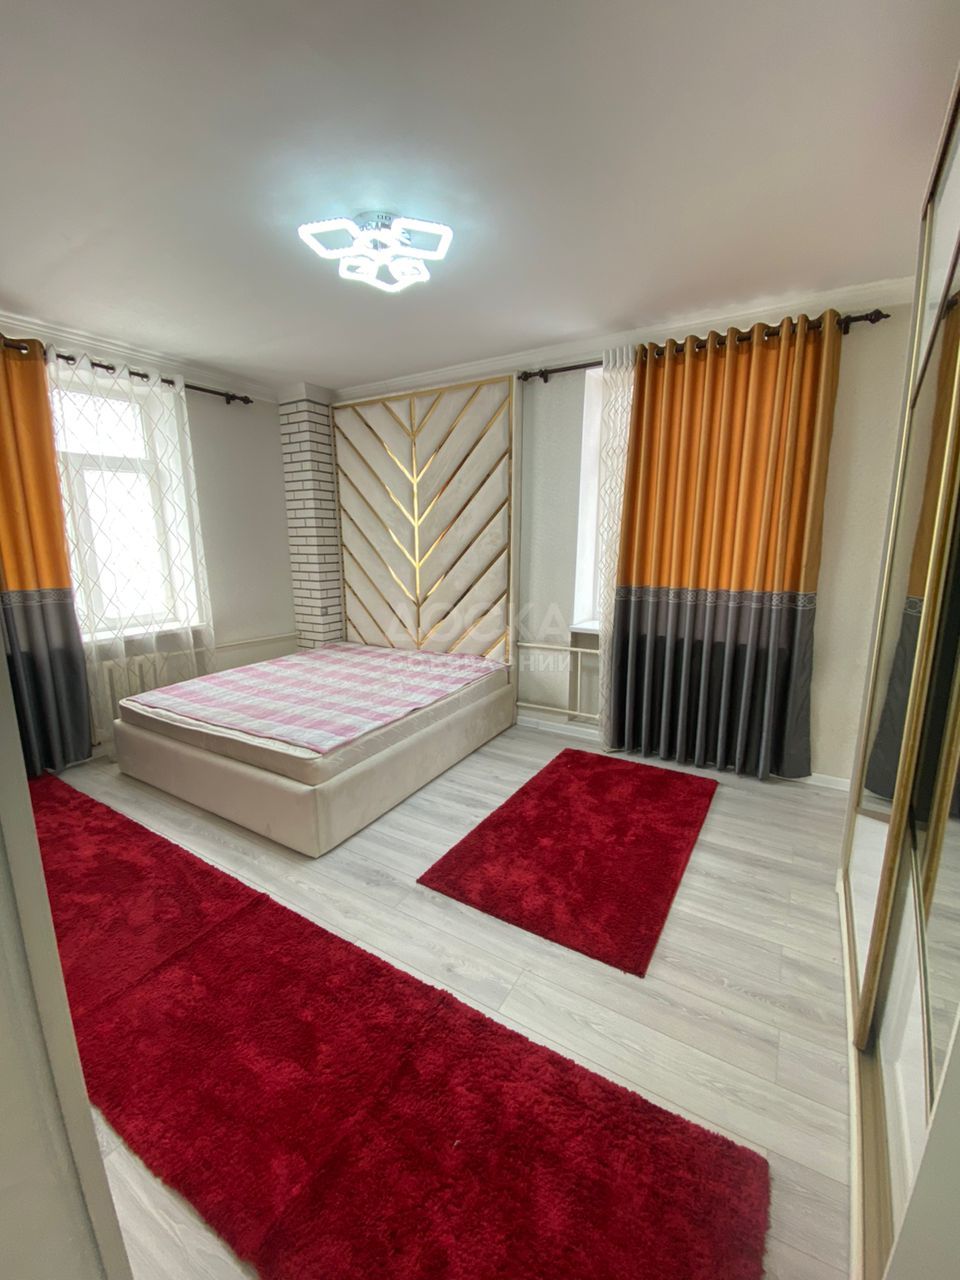 Продаю 2-комнатную квартиру, 52кв. м., этаж - 2/3, Киевская / Молодая Гвардия.